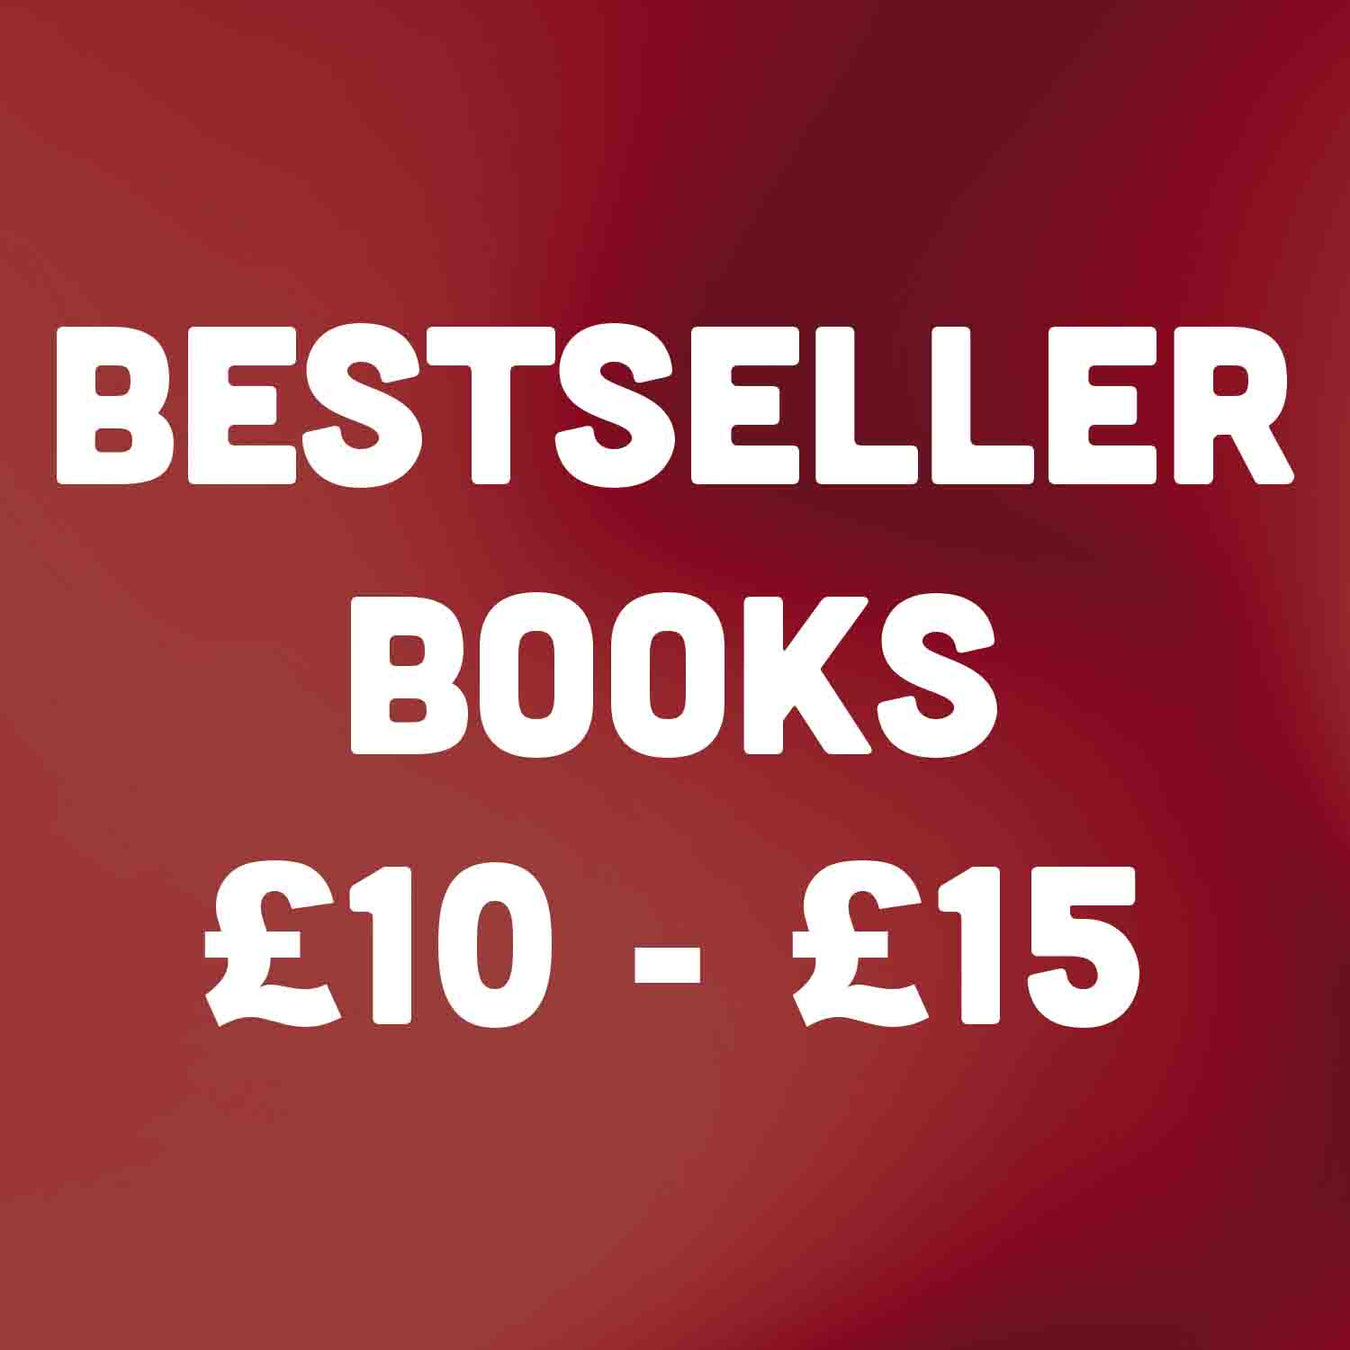 Bestseller Books £10 - £15